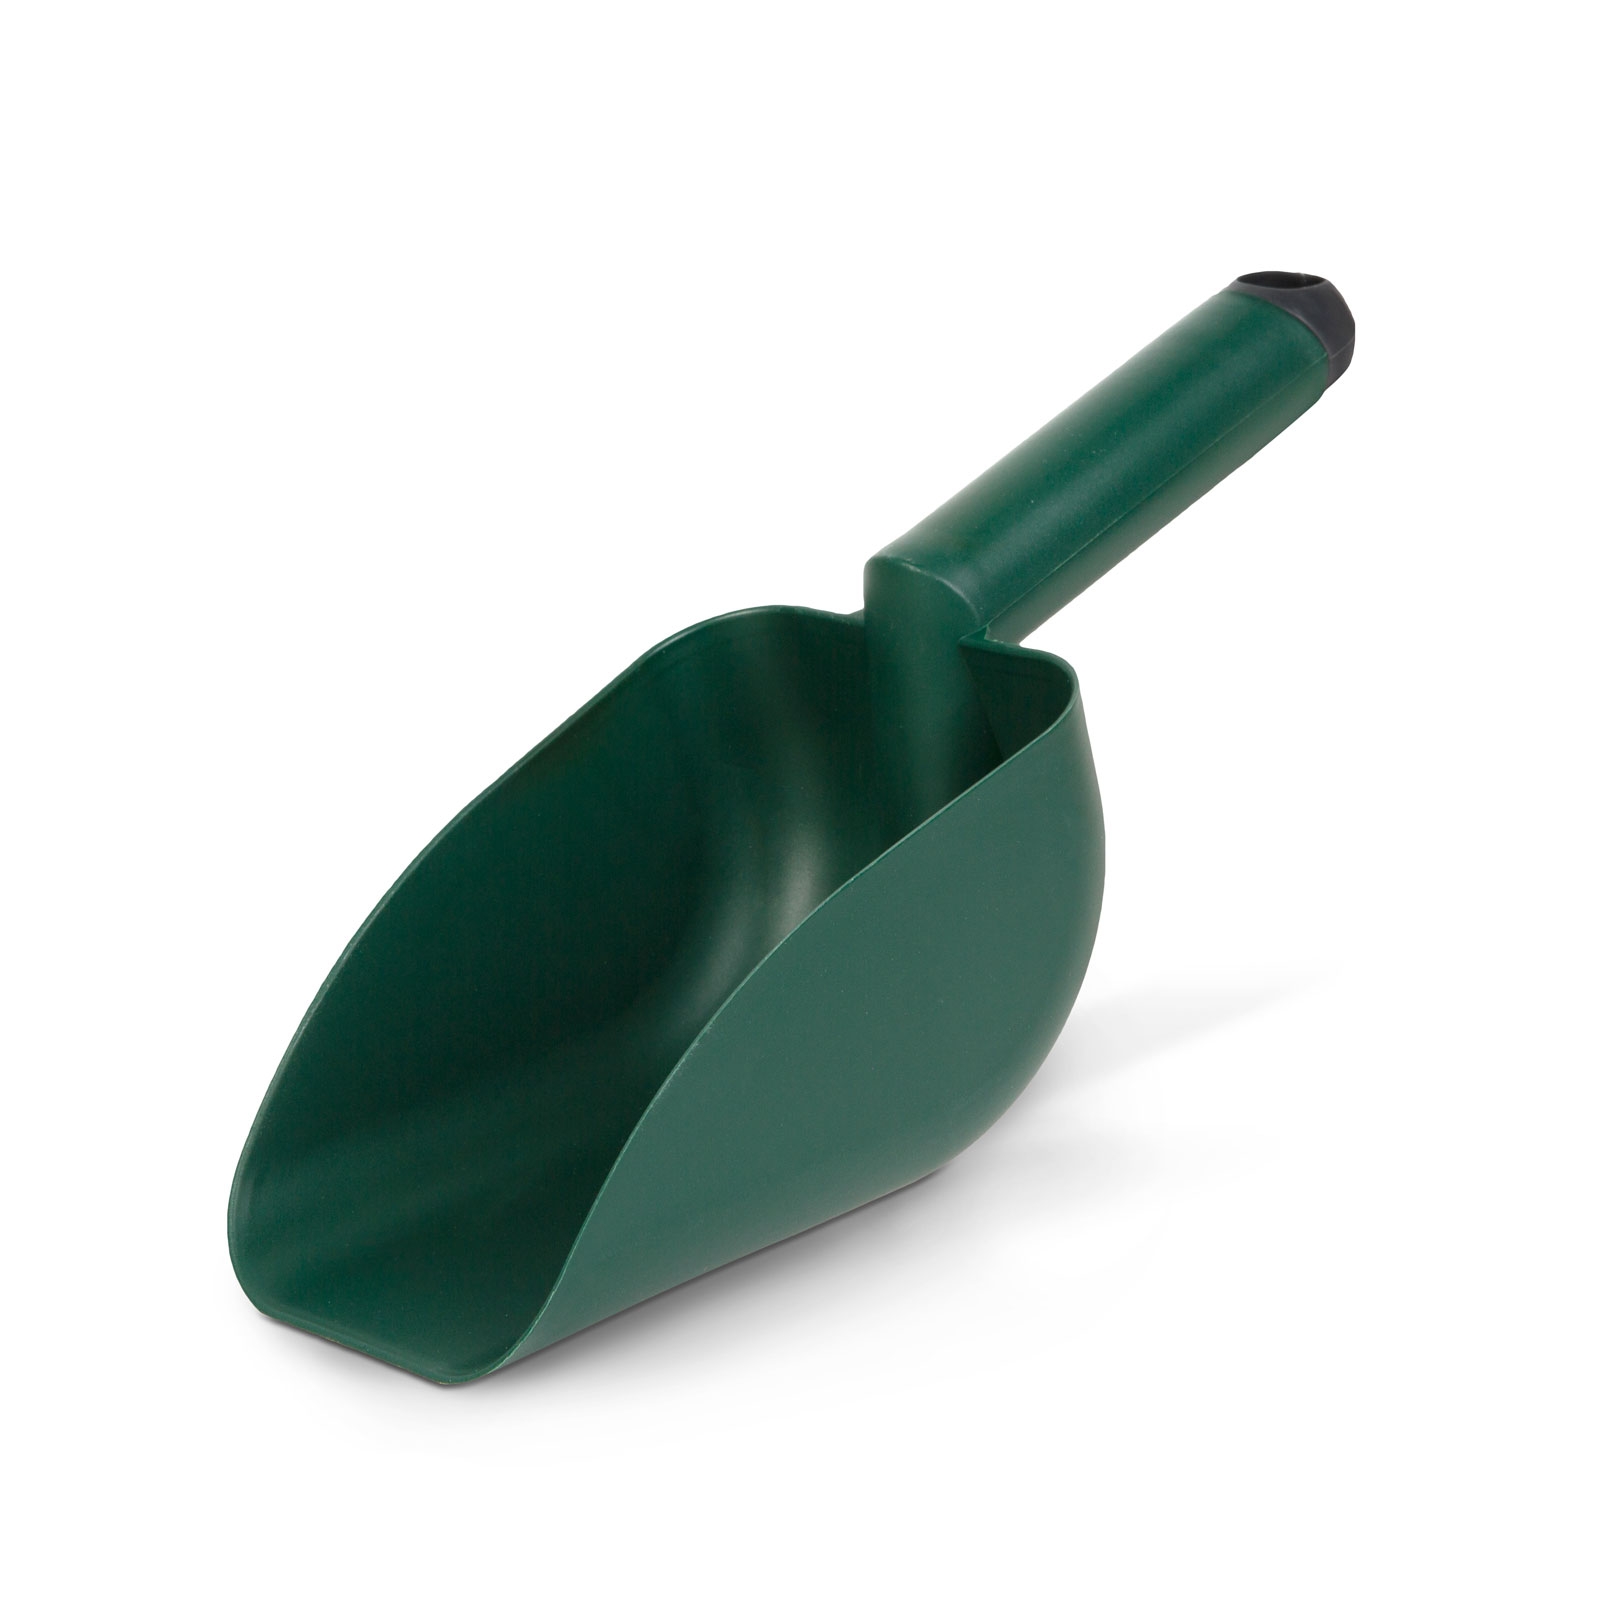 Fodder shovel, nutrition shovel - plastic thumb